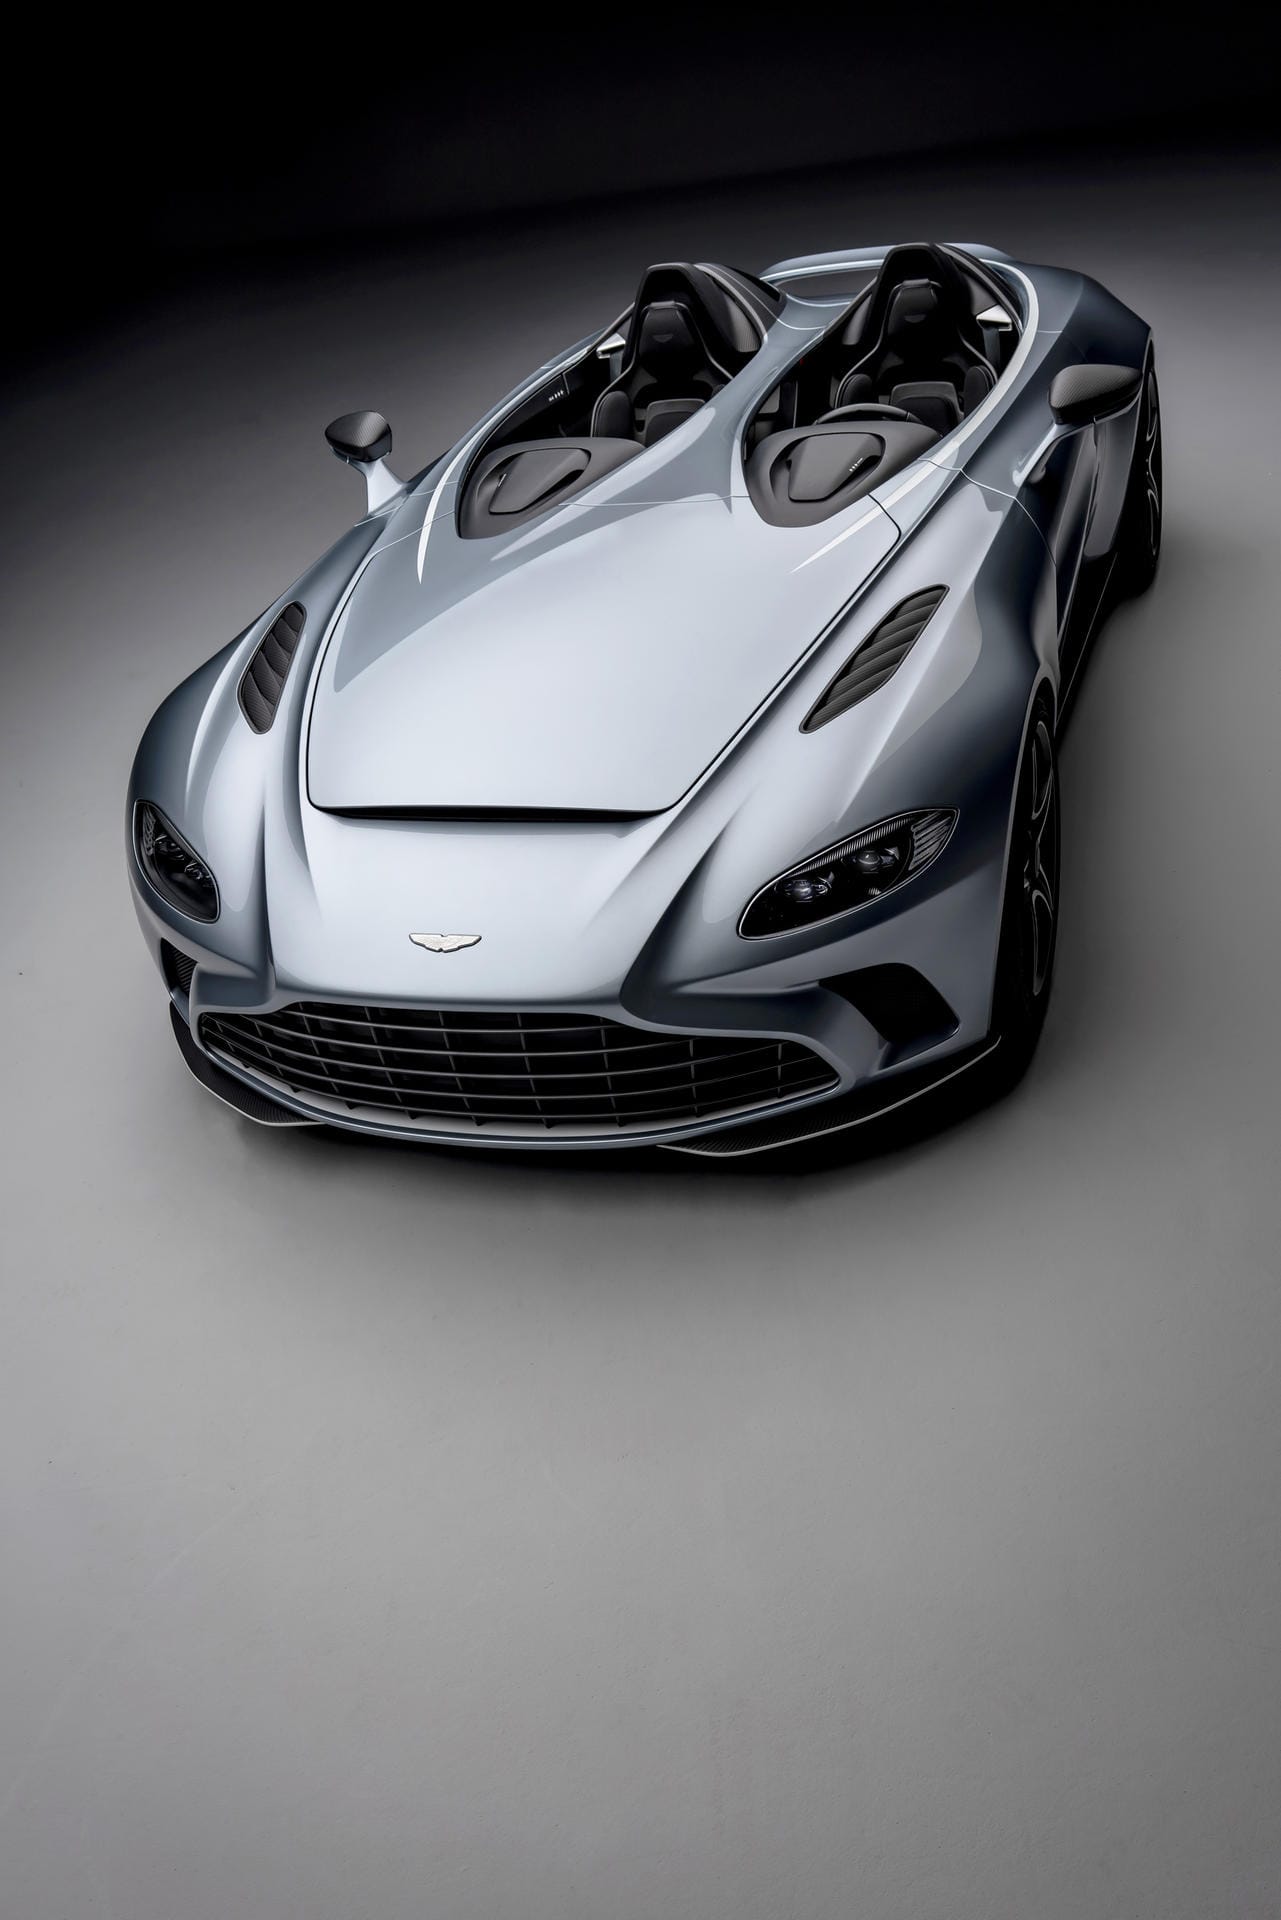 Aston Martin nennt seinen Zweisitzer V12 Speedster, montiert einen 515 kW/700 PS starken Zwölfzylinder für bis zu 300 km/h und plant 88 Exemplare zum Preis von jeweils mehr als 800.000 Euro.